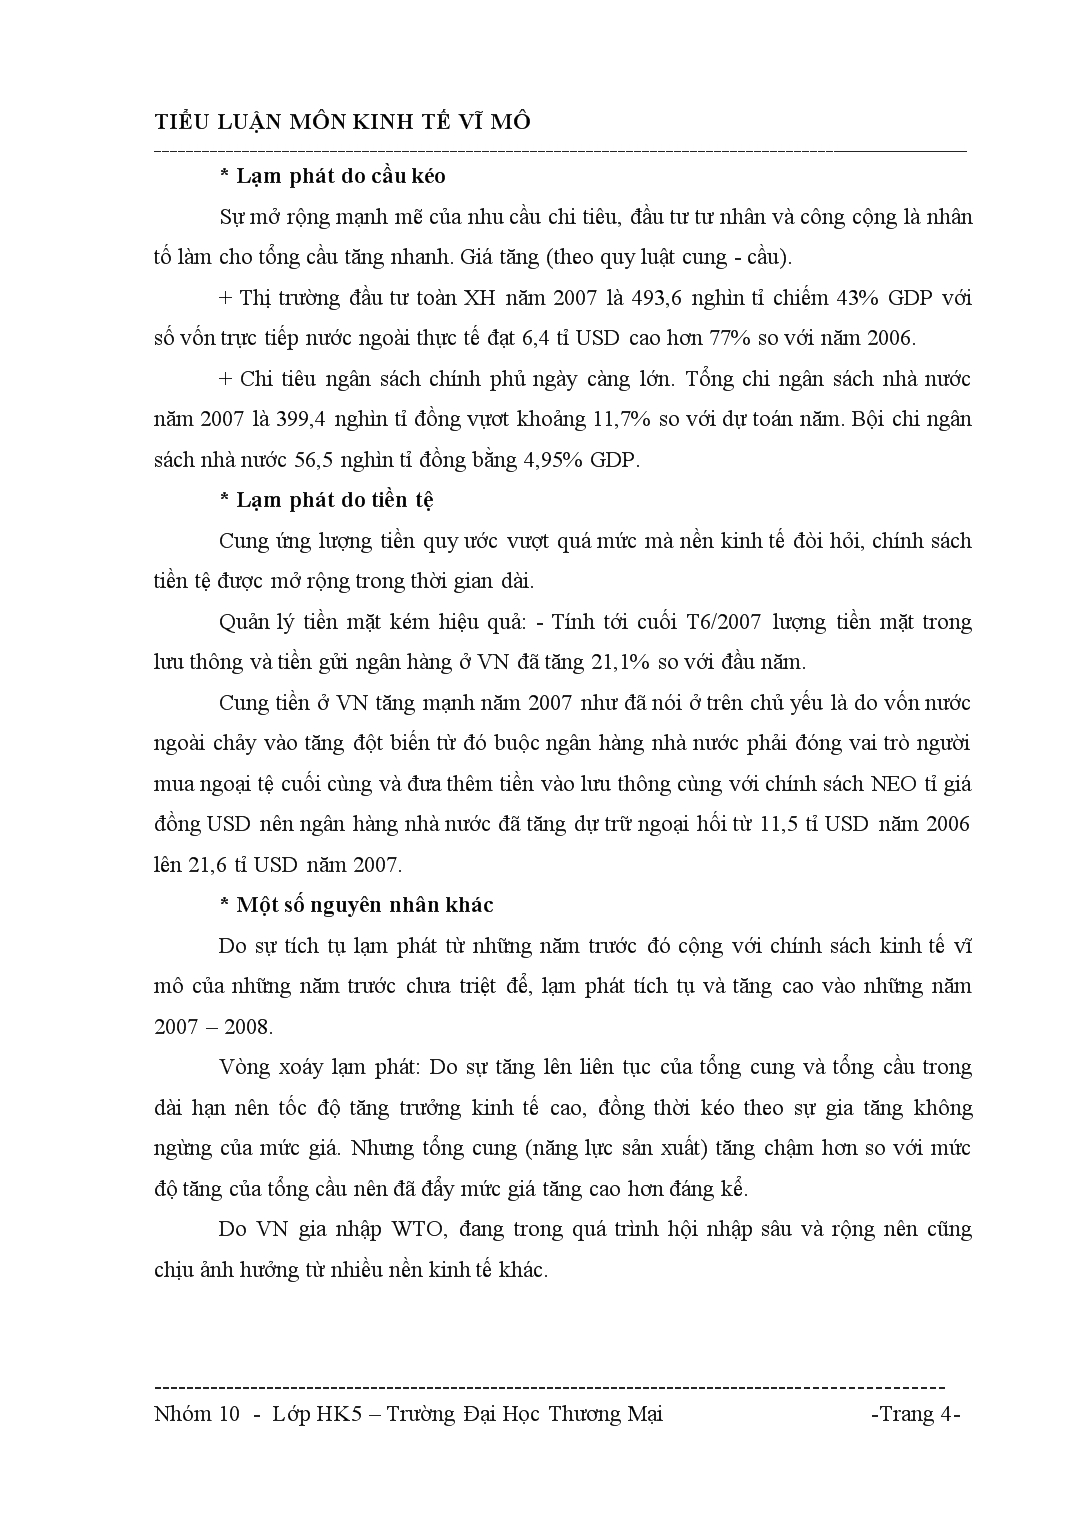 Tiểu luận Lạm phát và biện pháp kiềm chế, kiểm soát lạm phát ở Việt Nam hiện nay trang 4